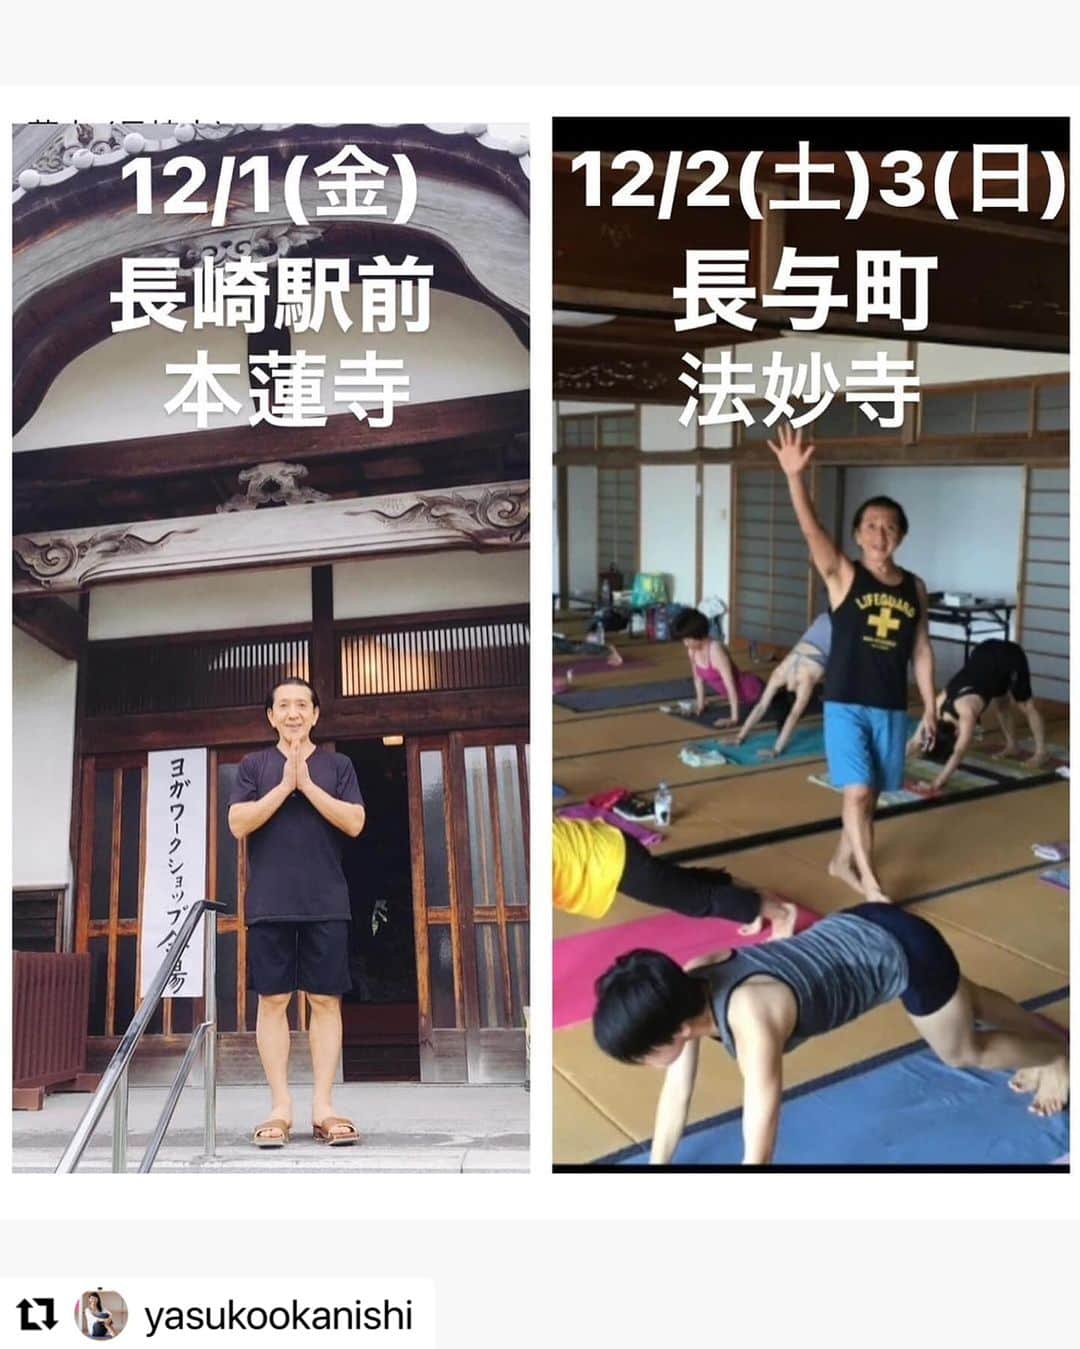 Ken Harakumaのインスタグラム：「いよいよ！開催まで1週間となりました。 💓ケン先生が長崎にやってくる💓 2023年12/1(金)2(土)3(日) 【ケンハラクマ先生長崎WS】 〜ケン先生と過ごす人生を幸せに変える特別な3日間〜  ワークショップ詳細はプロフィール欄リンクをご覧ください。 https://lit.link/lotusbloomyoga  詳しい内容はこちらです。 　　　↓↓↓↓↓↓↓� 12/1(金) 【長崎駅前 本蓮寺& Zoom】 ① 19:00-21:00 ＜ケンハラクマ先生のココロのバランスヨガ集中講座 ＞ @honren_ji   12/2(土) 【長与町 法妙寺& Zoom】 ② 8:00-9:45 ＜アシュタンガヨガマイソールクラス＞  ③ 10:00-11:30 ＜アシュタンガヨガ入門＋プラナヤマ（呼吸法）＋マインドフルネス瞑想クラス＞  ④ 11:30-12:30 ＜ケン先生とランチタイム with ファンタスマーケット特製ベジ弁当＞ @fantas_mkt ※要予約30食限定。  ⑤ 12:30-18:30 ＜-ヨガを伝える- ケンハラクマ先生から学ぶヨガビジネス講座6時間＞�＊修了後ケンハラクマサイン入り修了書授与  12/3(日) 【長与町 法妙寺& Zoom】 ⑥ 8:00-9:45 ＜アシュタンガヨガマイソールクラス＞  ⑦ 10:00-11:30 ＜アシュタンガヨガビギナー＋プラナヤマ（呼吸法）＋マインドフルネス瞑想クラス＞  ⑧ 11:30-12:30 ＜ケン先生とランチタイム with 深田惣菜特製オーガニック弁当＞  @fukadasouzai @fukada_souzai ※完売いたしました。  ⑨ 12:30-17:30 ＜人生上向く！ケンハラクマ著50歳60歳からの「健康ゆるやかヨガ」指導者講座5時間> ※修了後指導者資格認定書授与。  ⑩ 13:30-15:00 ＜ケンハラクマ指導「健康ゆるやかヨガ」体験クラス  詳しくはプロフィールリンクイベントページをご参照ください。 https://lit.link/lotusbloomyoga http://lotusbloomyoga.jp/02.html  @kenharakuma @international_yoga_center   お申込みお問合せは LOTUS BLOOM YOGA  岡西康子まで、お気軽にお尋ねください。DMからもお気軽に！  @lotusbloomyogastudio  @yasukookanishi   #ケンハラクマ  #アシュタンガ  #ヨガ  #yoga  #ashtangayoga  #peace  #mindfulness  #yoga lifestyle #お寺ヨガ #長崎  #ながさき  #nagasaki #長崎ヨガ  #長崎ヨガイベント」